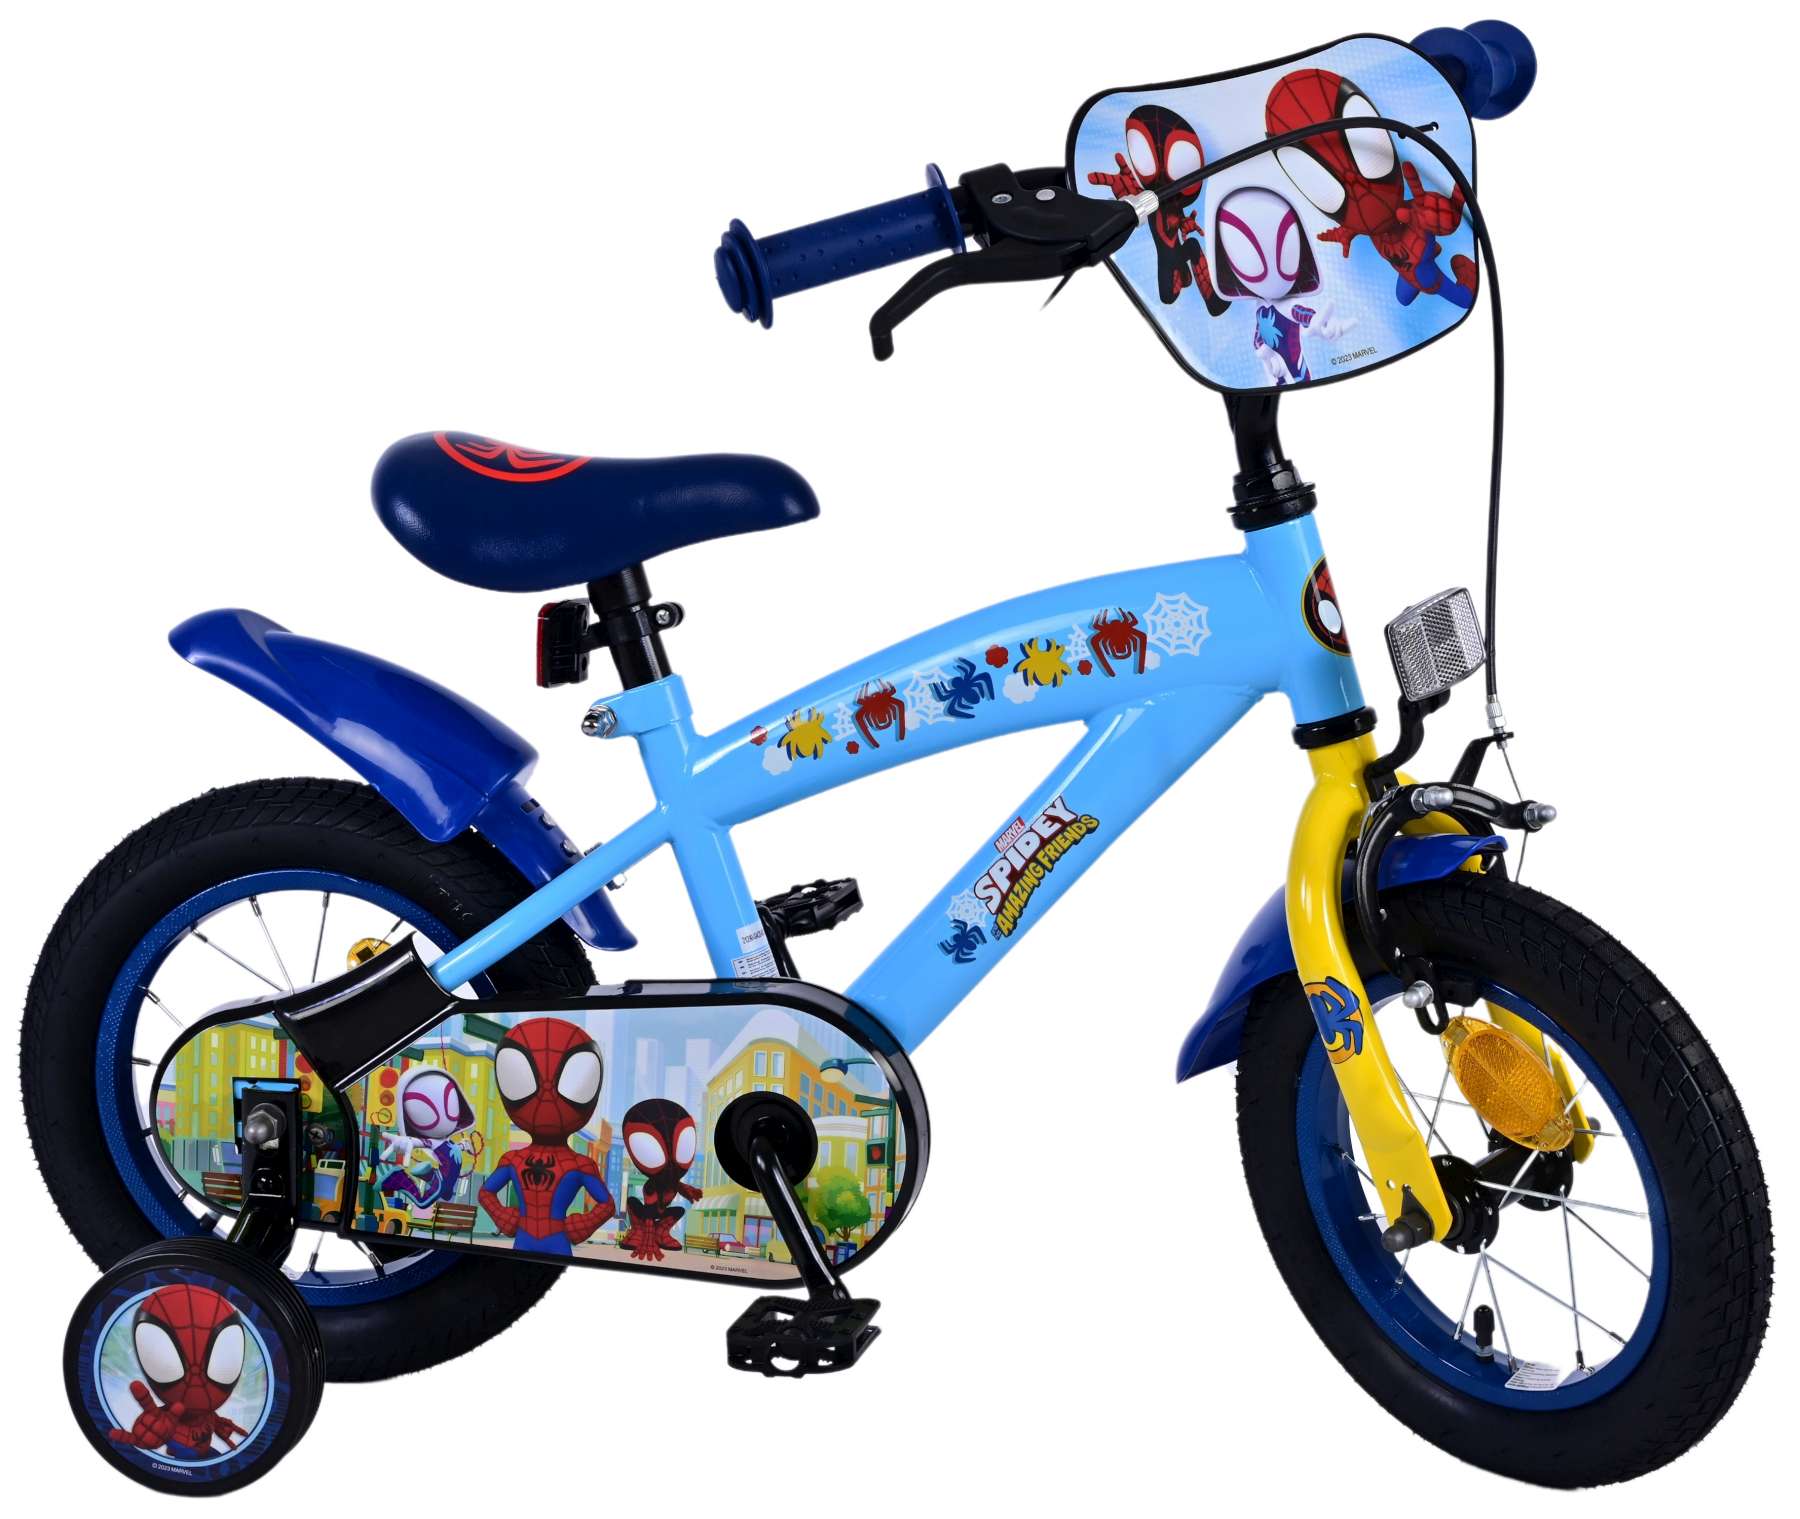 Kinderfahrrad Spidey für Jungen 12 Zoll Kinderrad in Blau